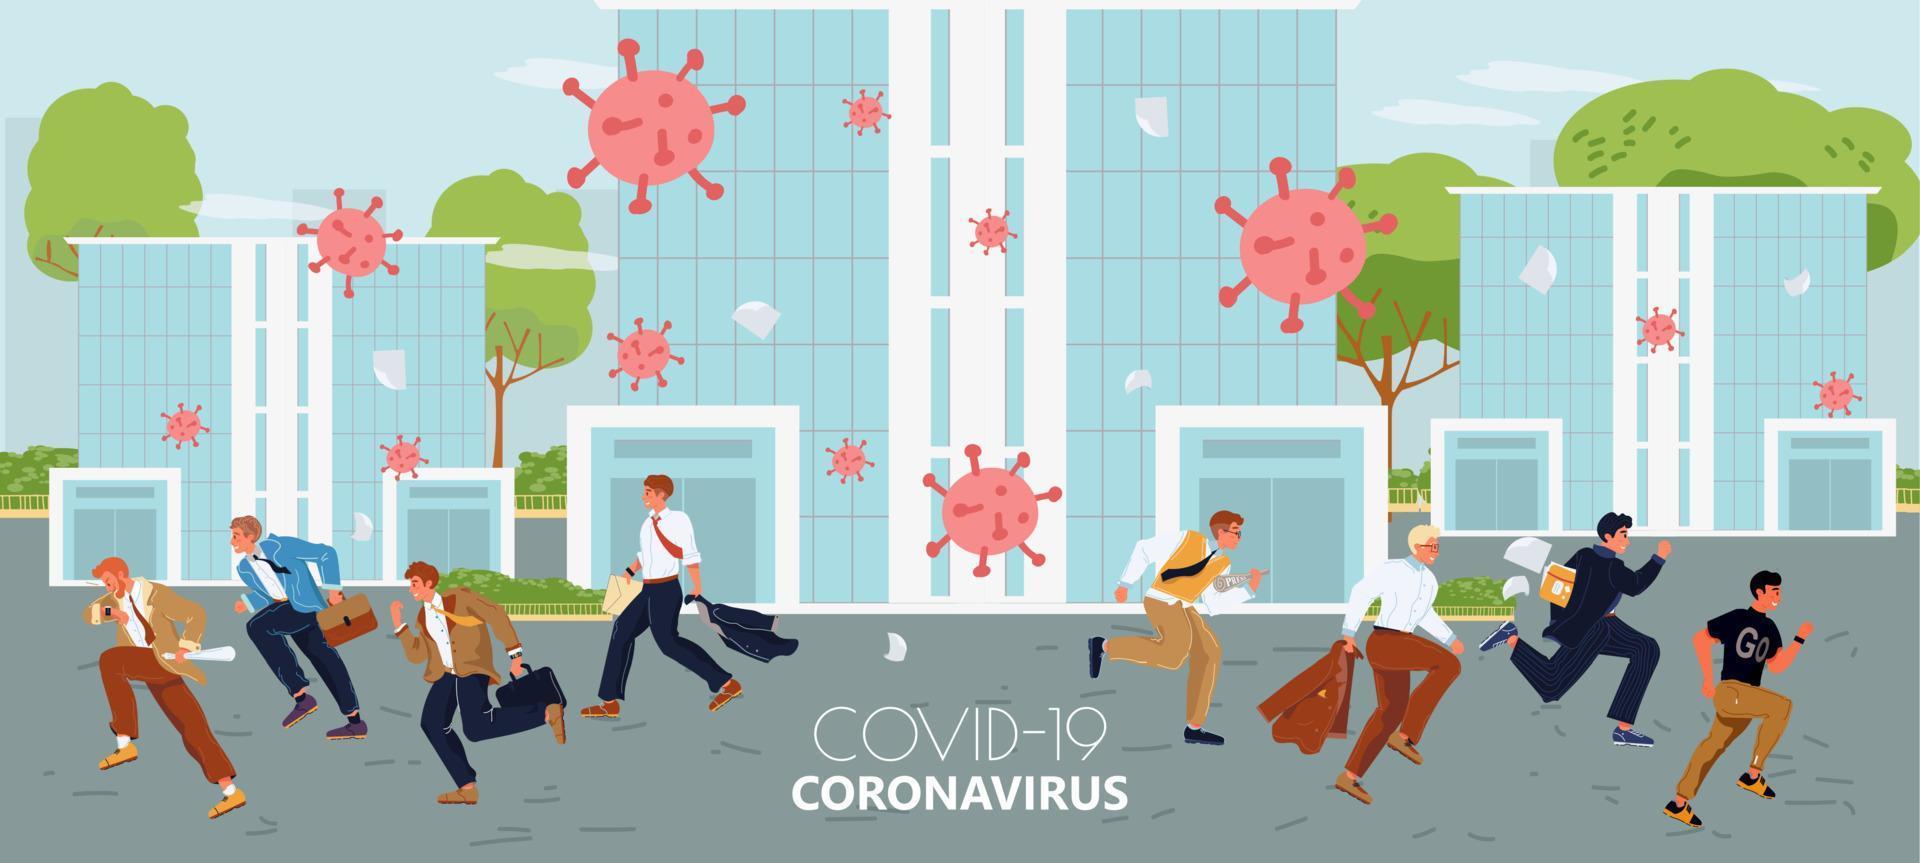 saison grippe, coronavirus grippe pandémie concept vecteur